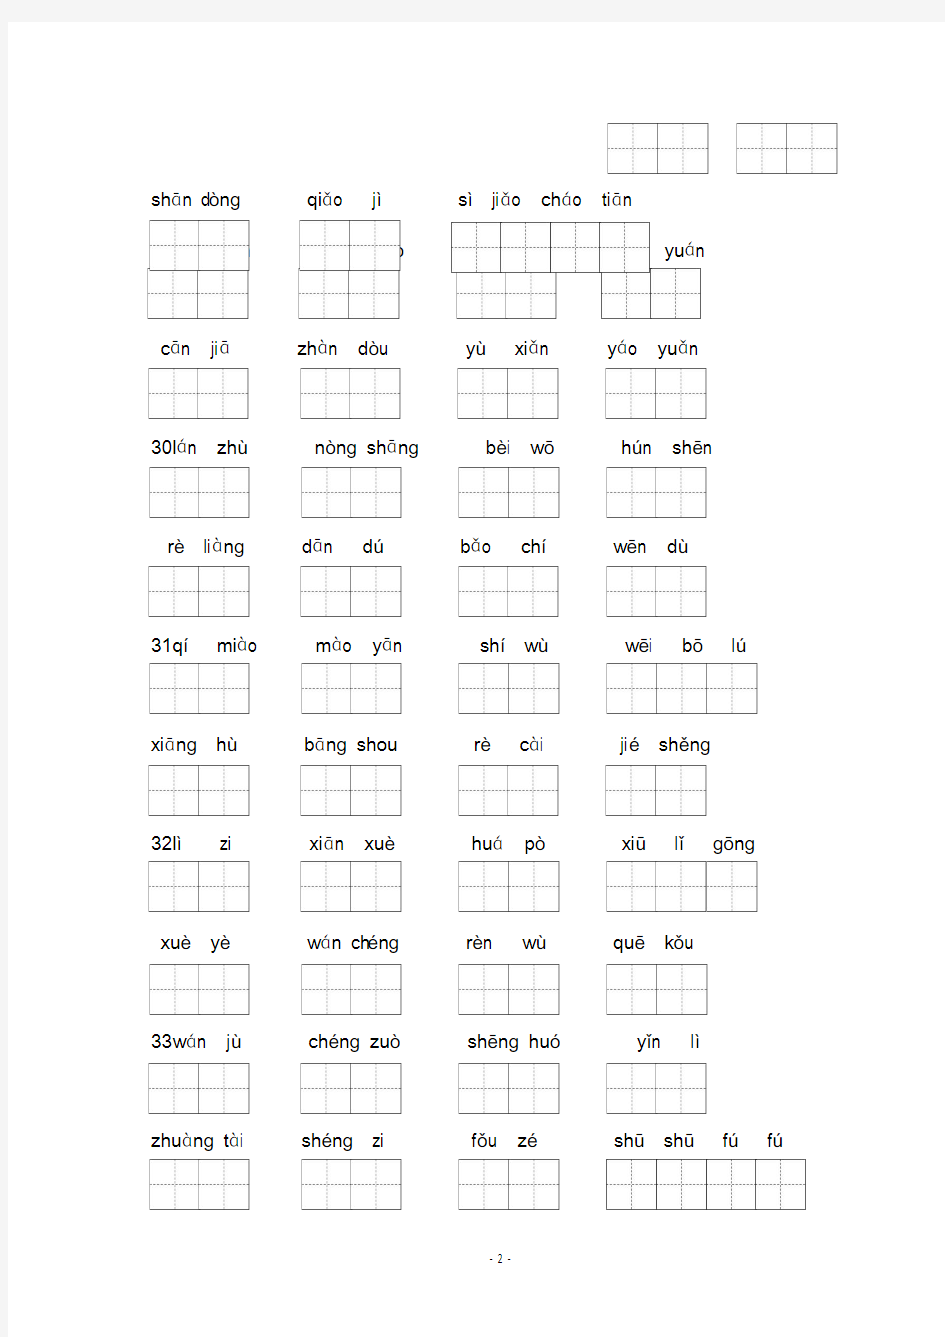 沪教版二年级第一学期看拼音写词语(23-45)